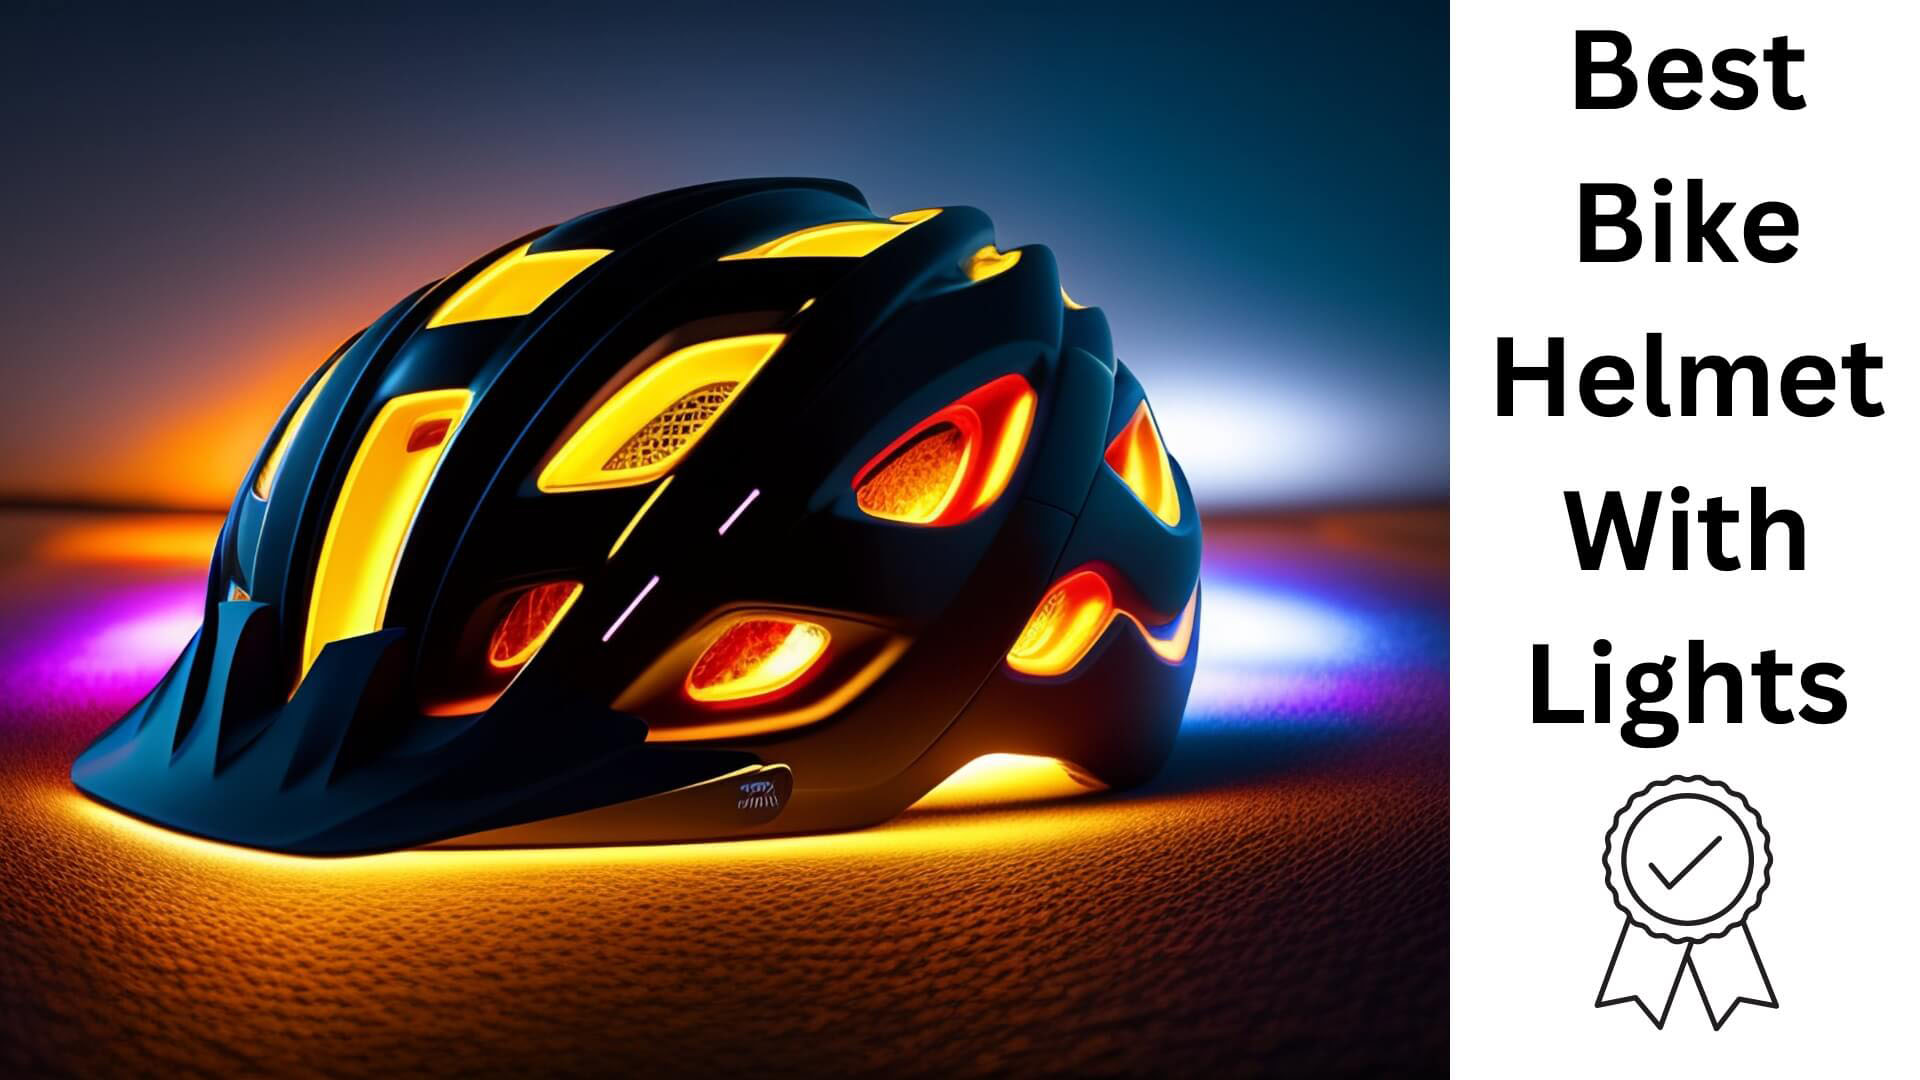 Best Bike Helmet with Lights